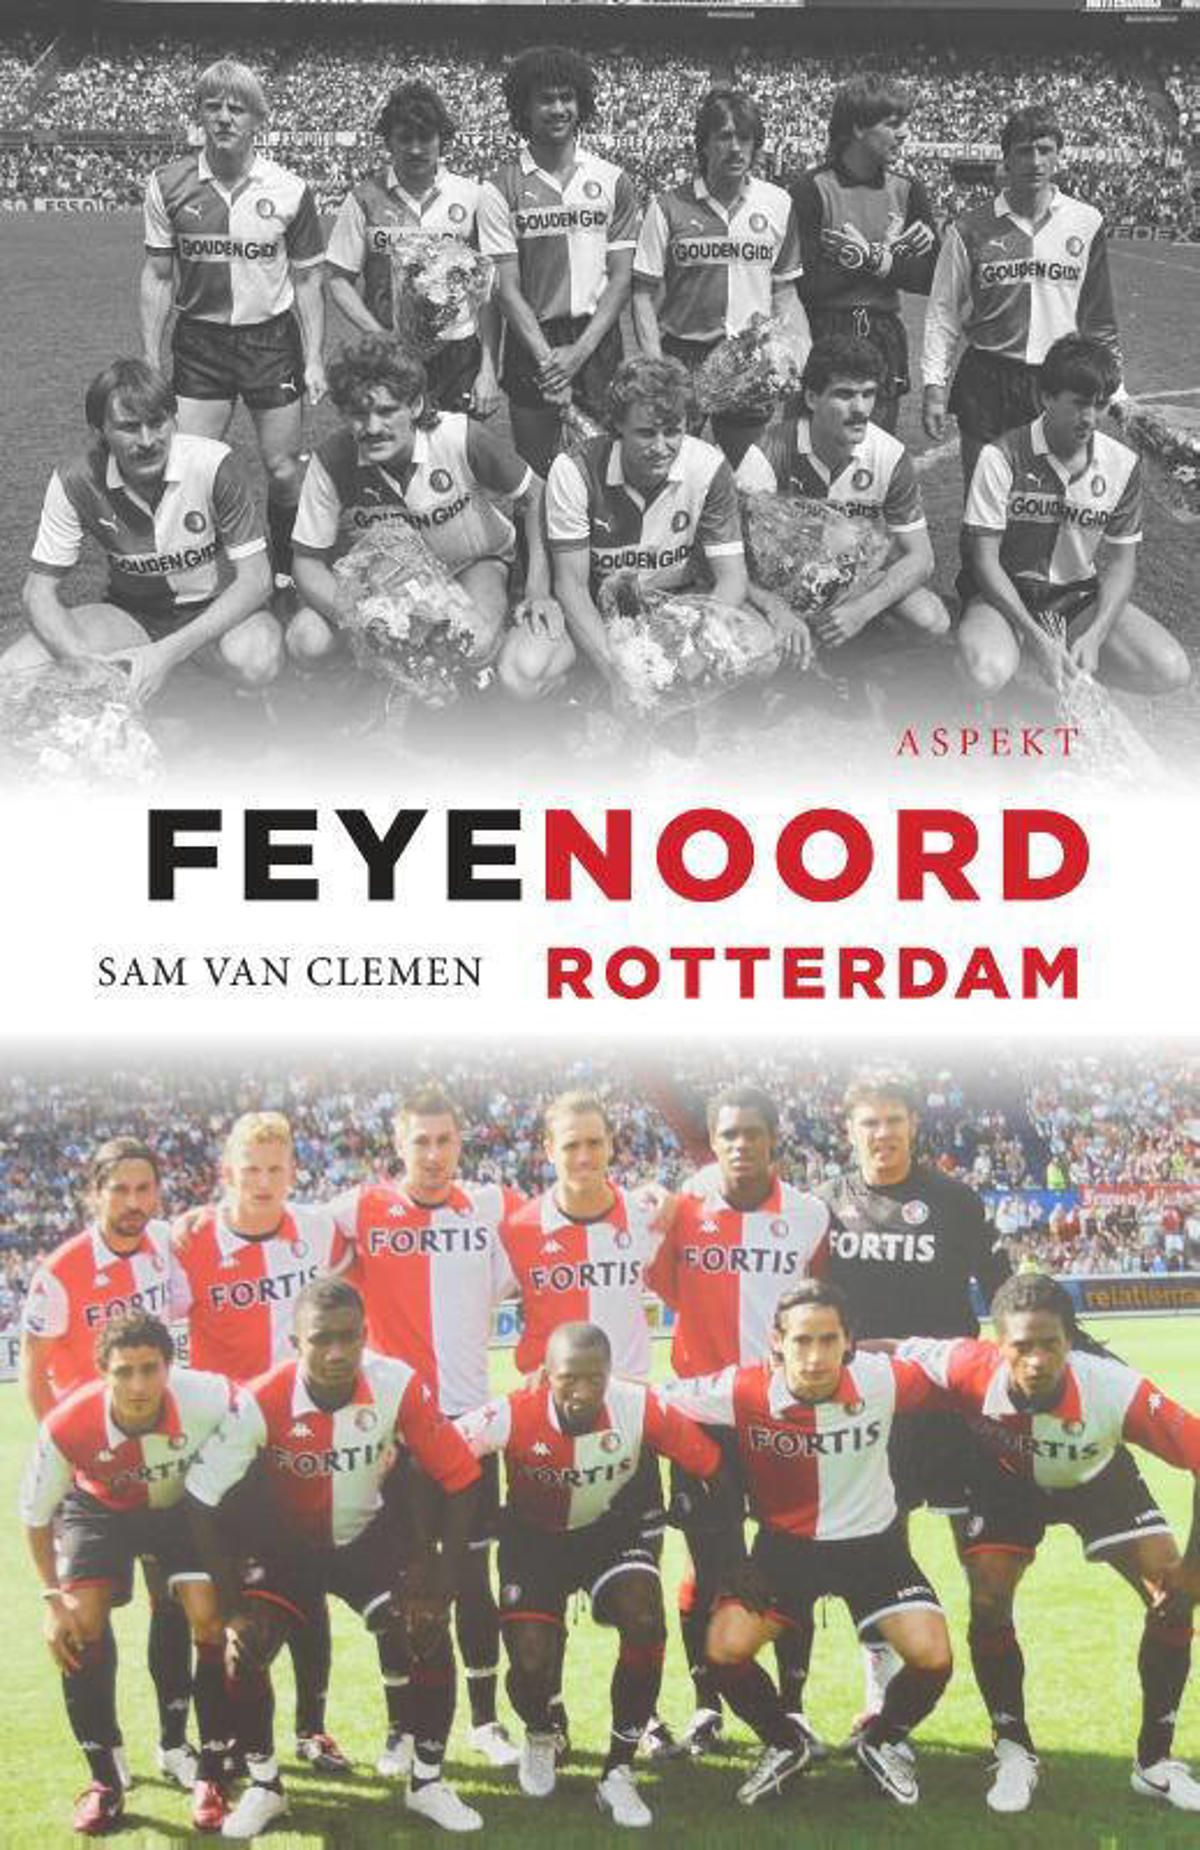 Sam van Feyenoord | wehkamp